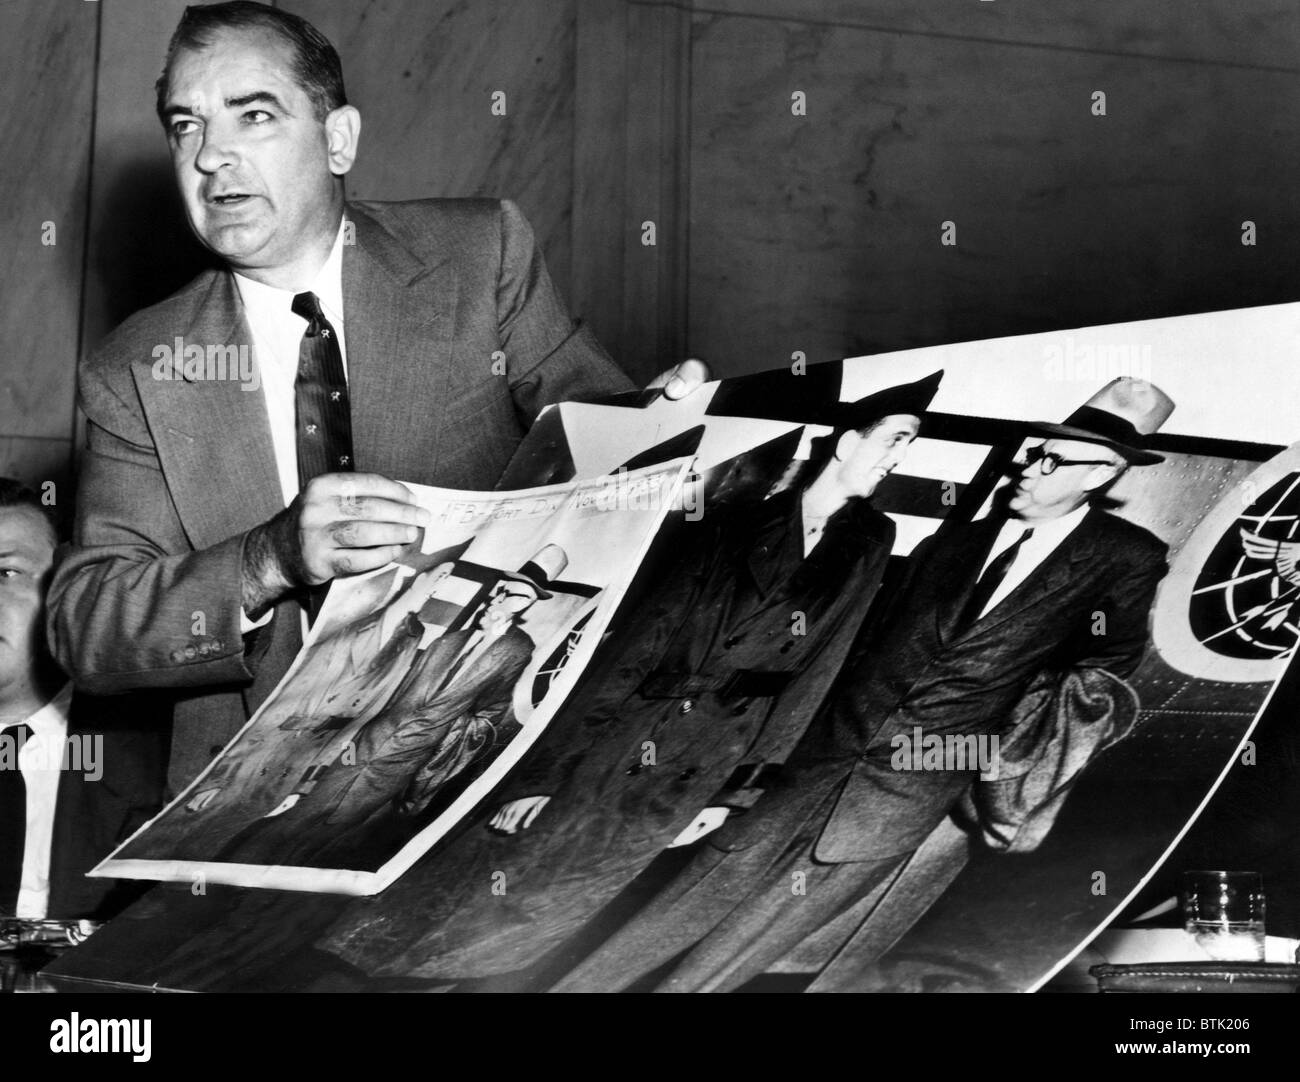 EV1816 - Senator Joseph McCarthy zeigt einen abgeschnittenen Foto, dass er behauptet wird "Beweise" der amerikanischen kommunistischen Infiltration in eine Se Stockfoto